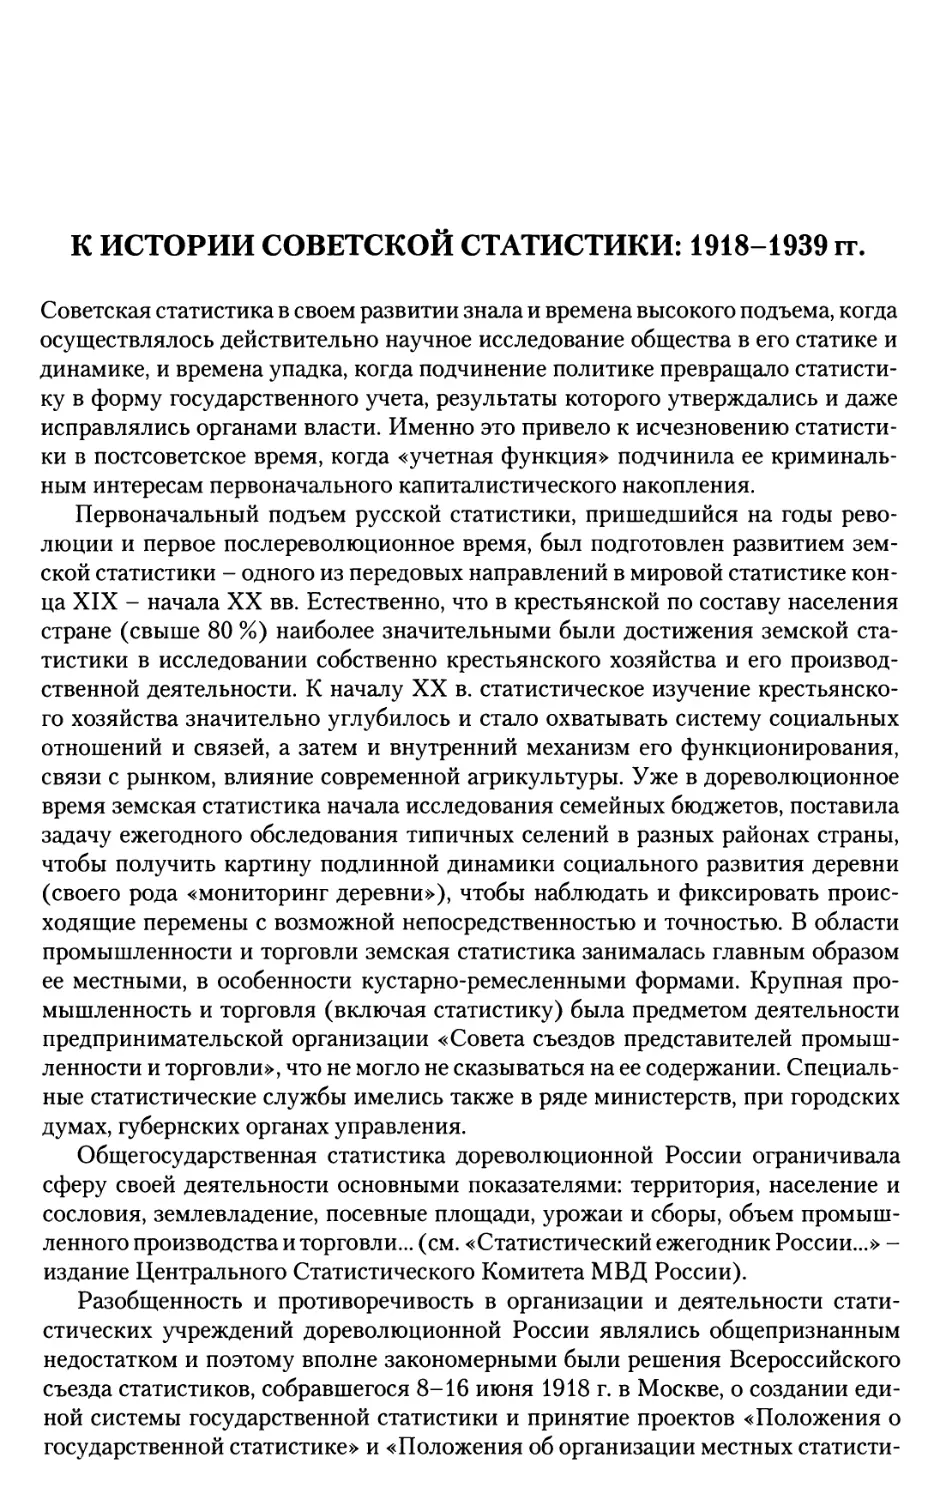 К истории советской статистики: 1918-1939 гг